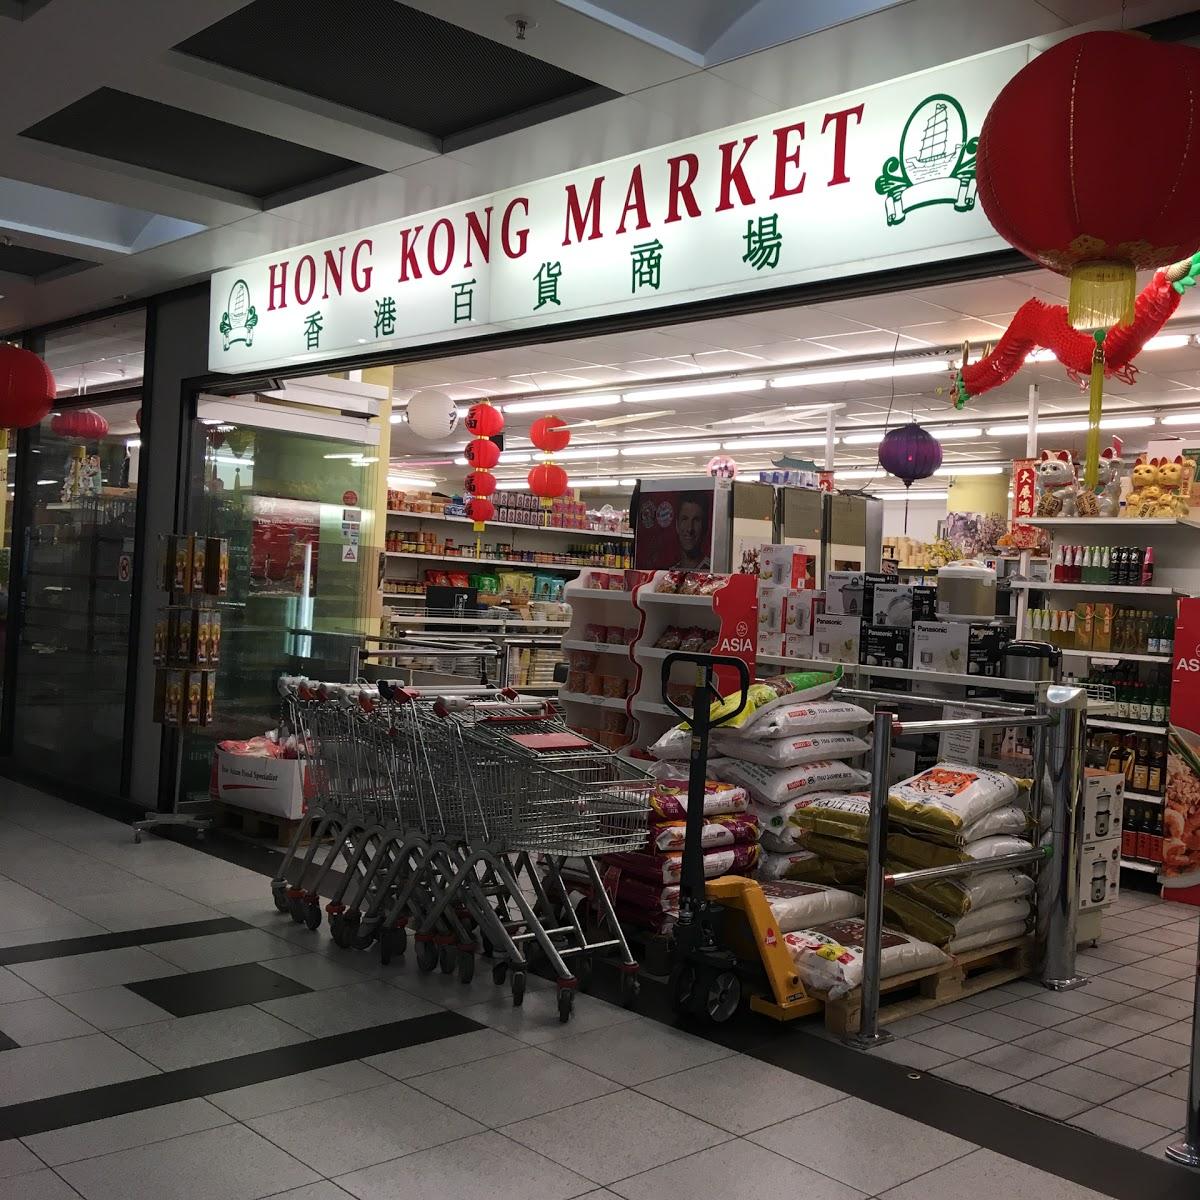 Restaurant "Hong Kong Market" in München